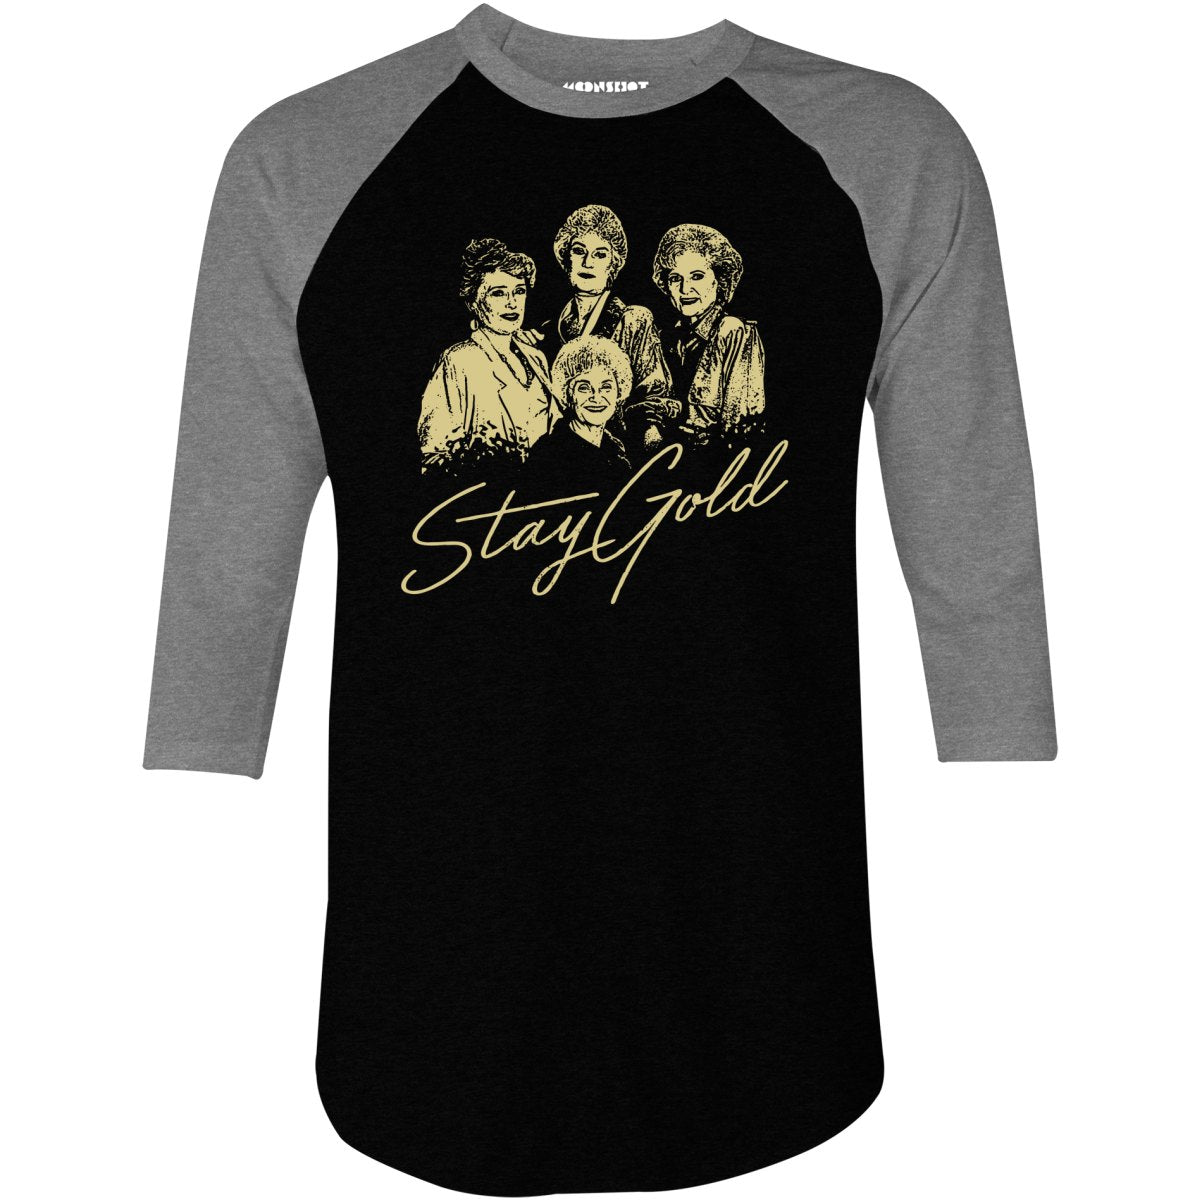 Stay Gold - Golden Girls - 3/4 Sleeve Raglan T-Shirt